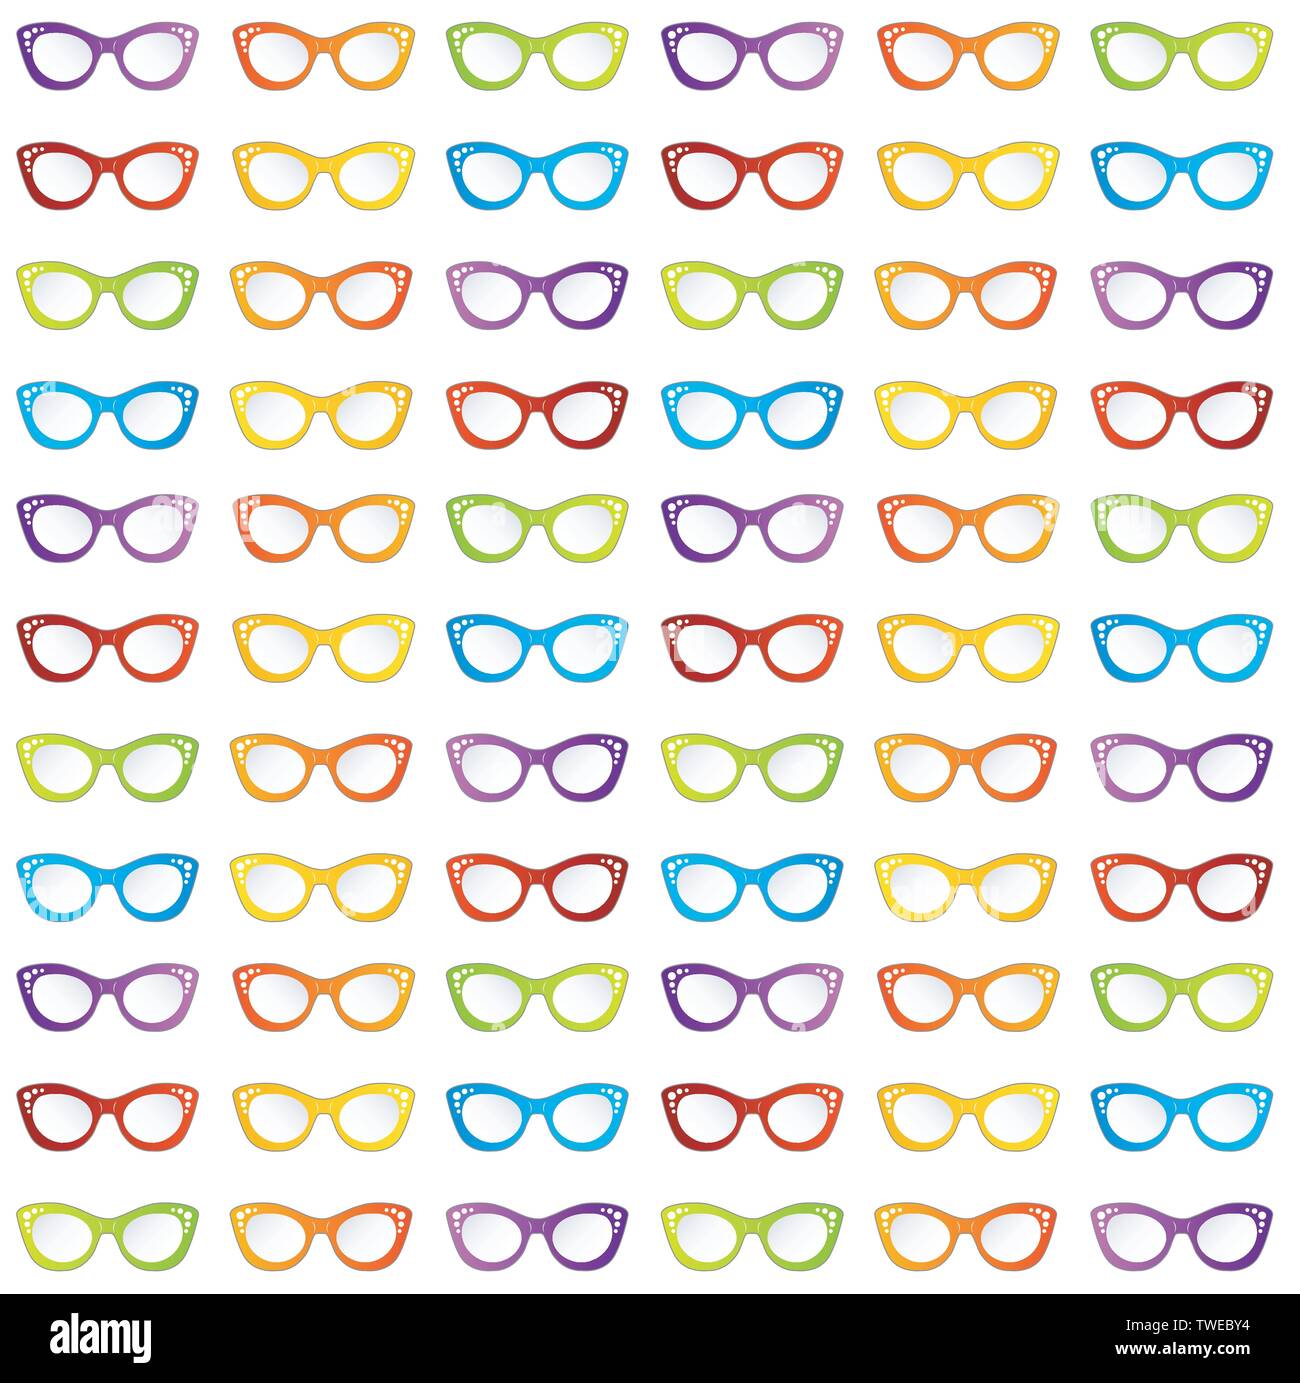 Lunettes lunettes vintage été colorés en forme des yeux de chat Illustration de Vecteur